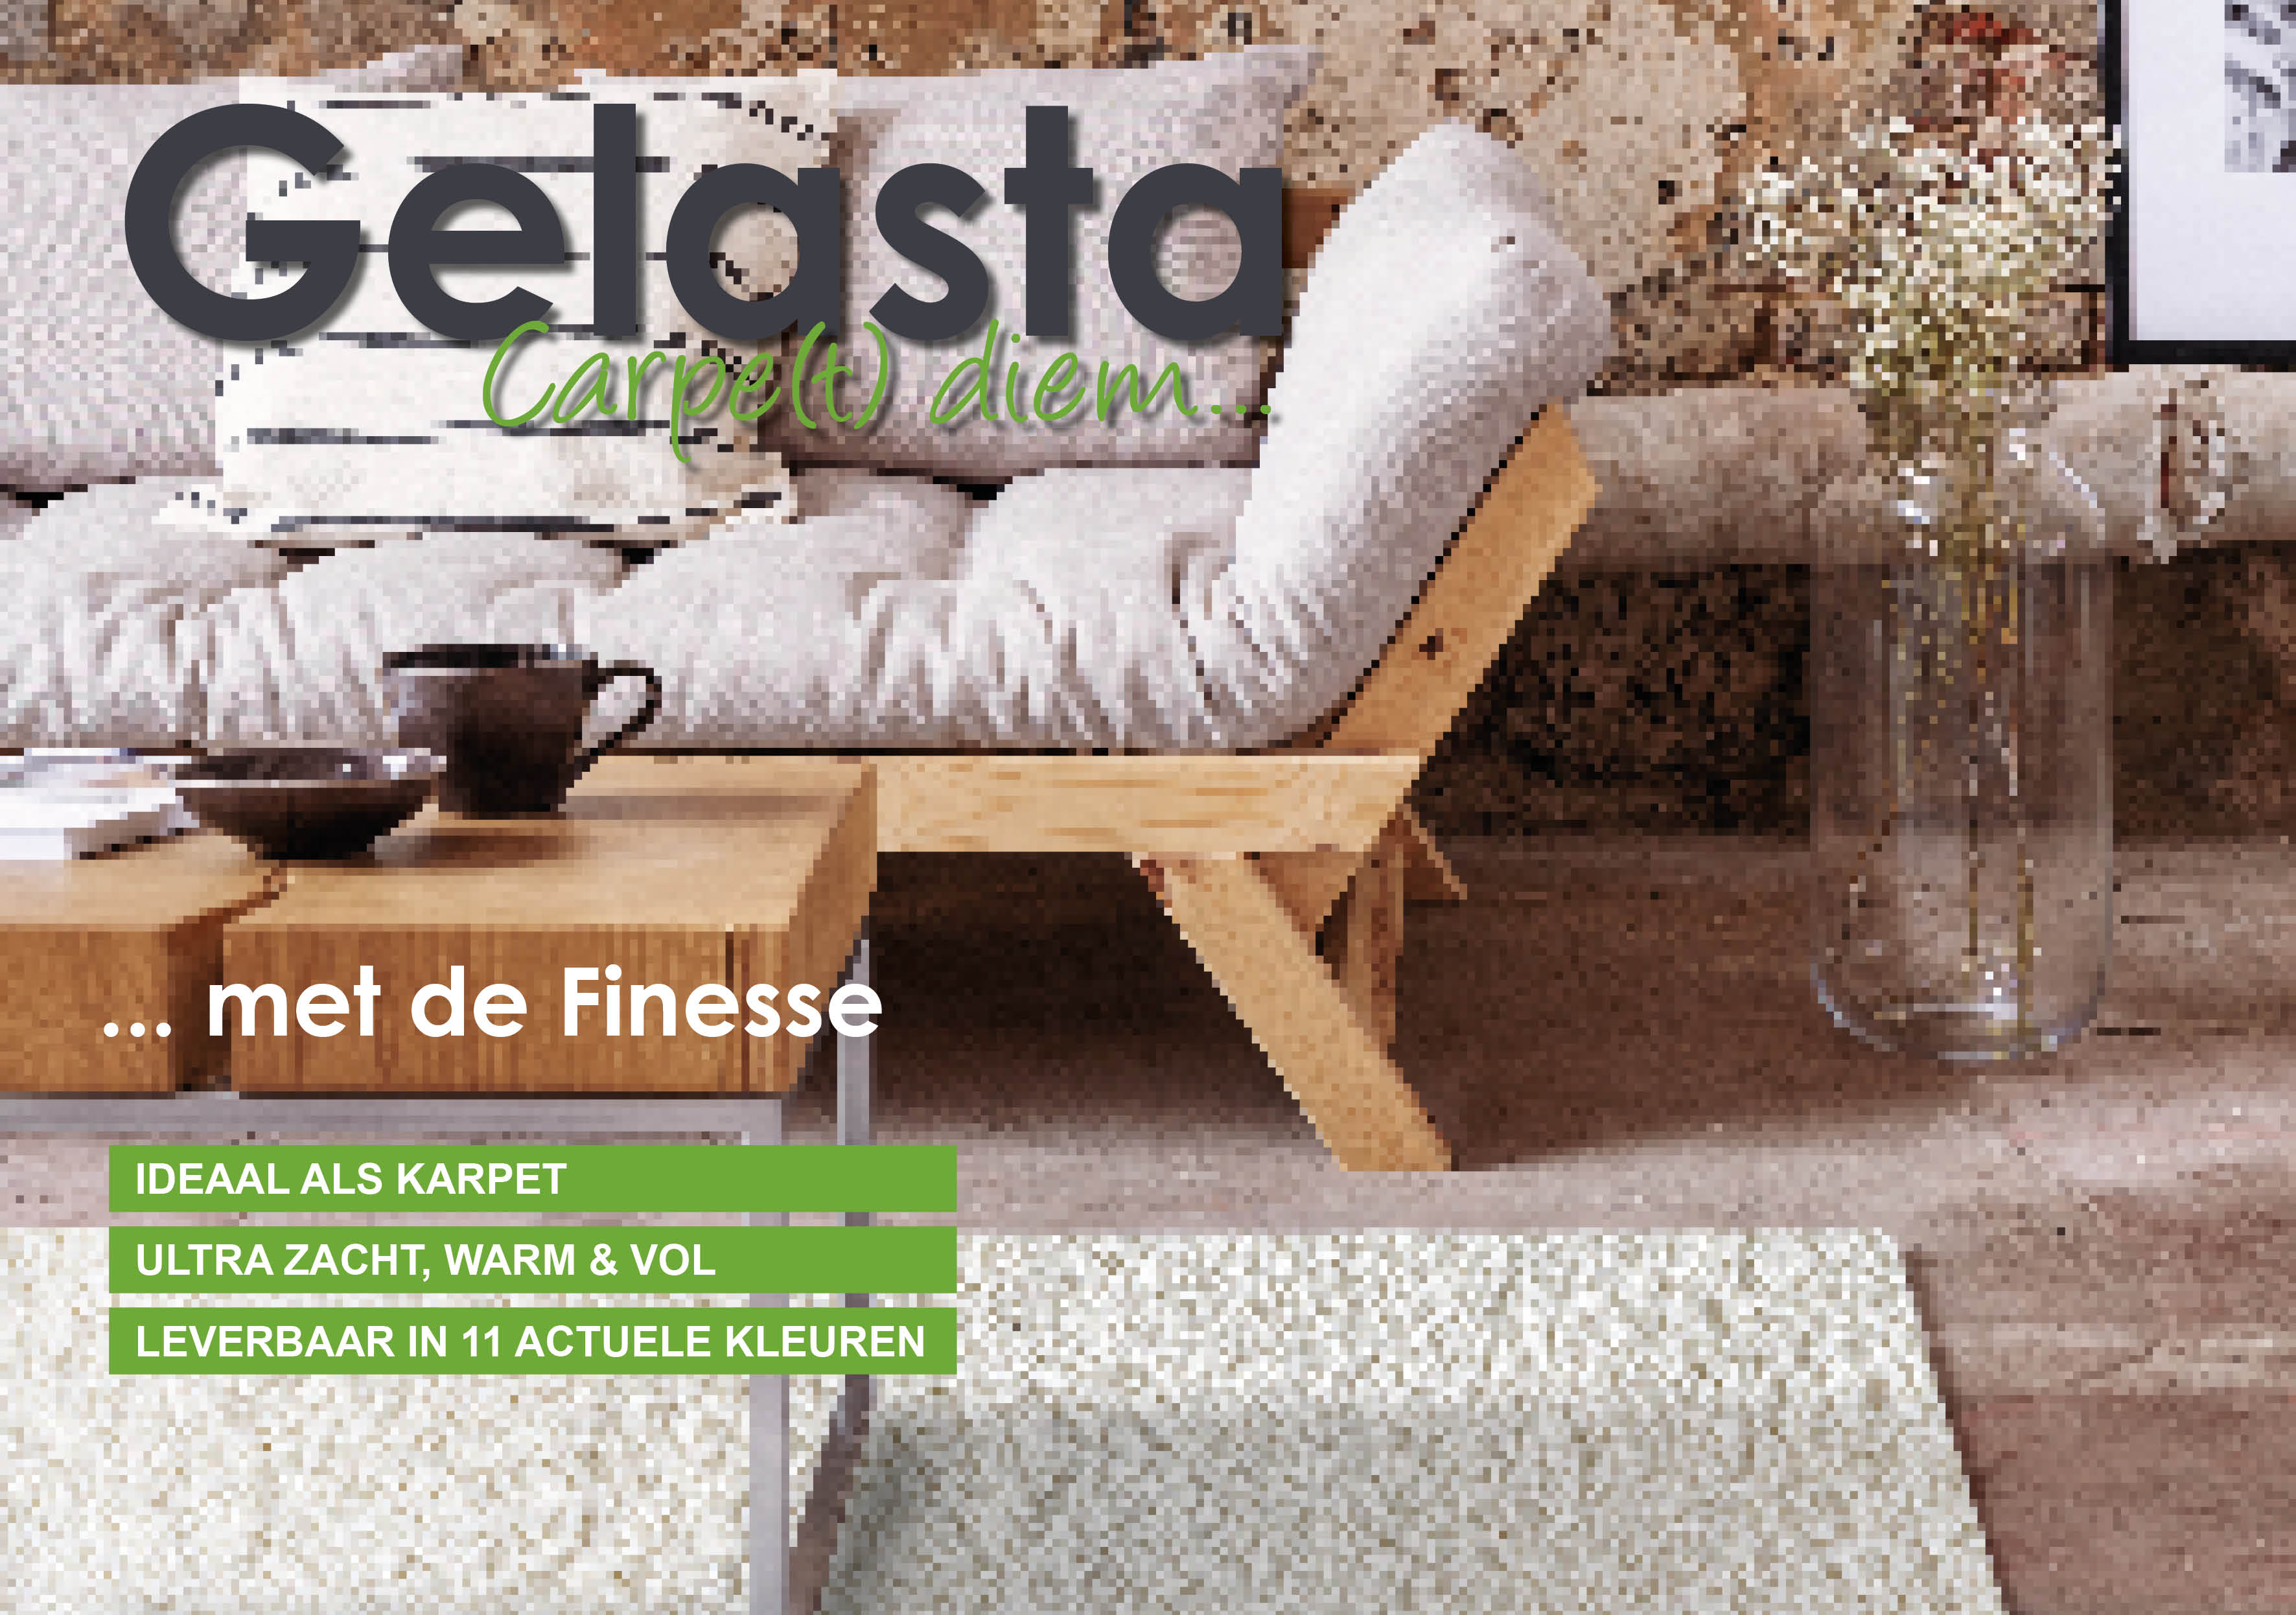 Overleving bruiloft software Gelasta introduceert Finesse-tapijt - tapijt-karpet - vloer - WONEN.nl